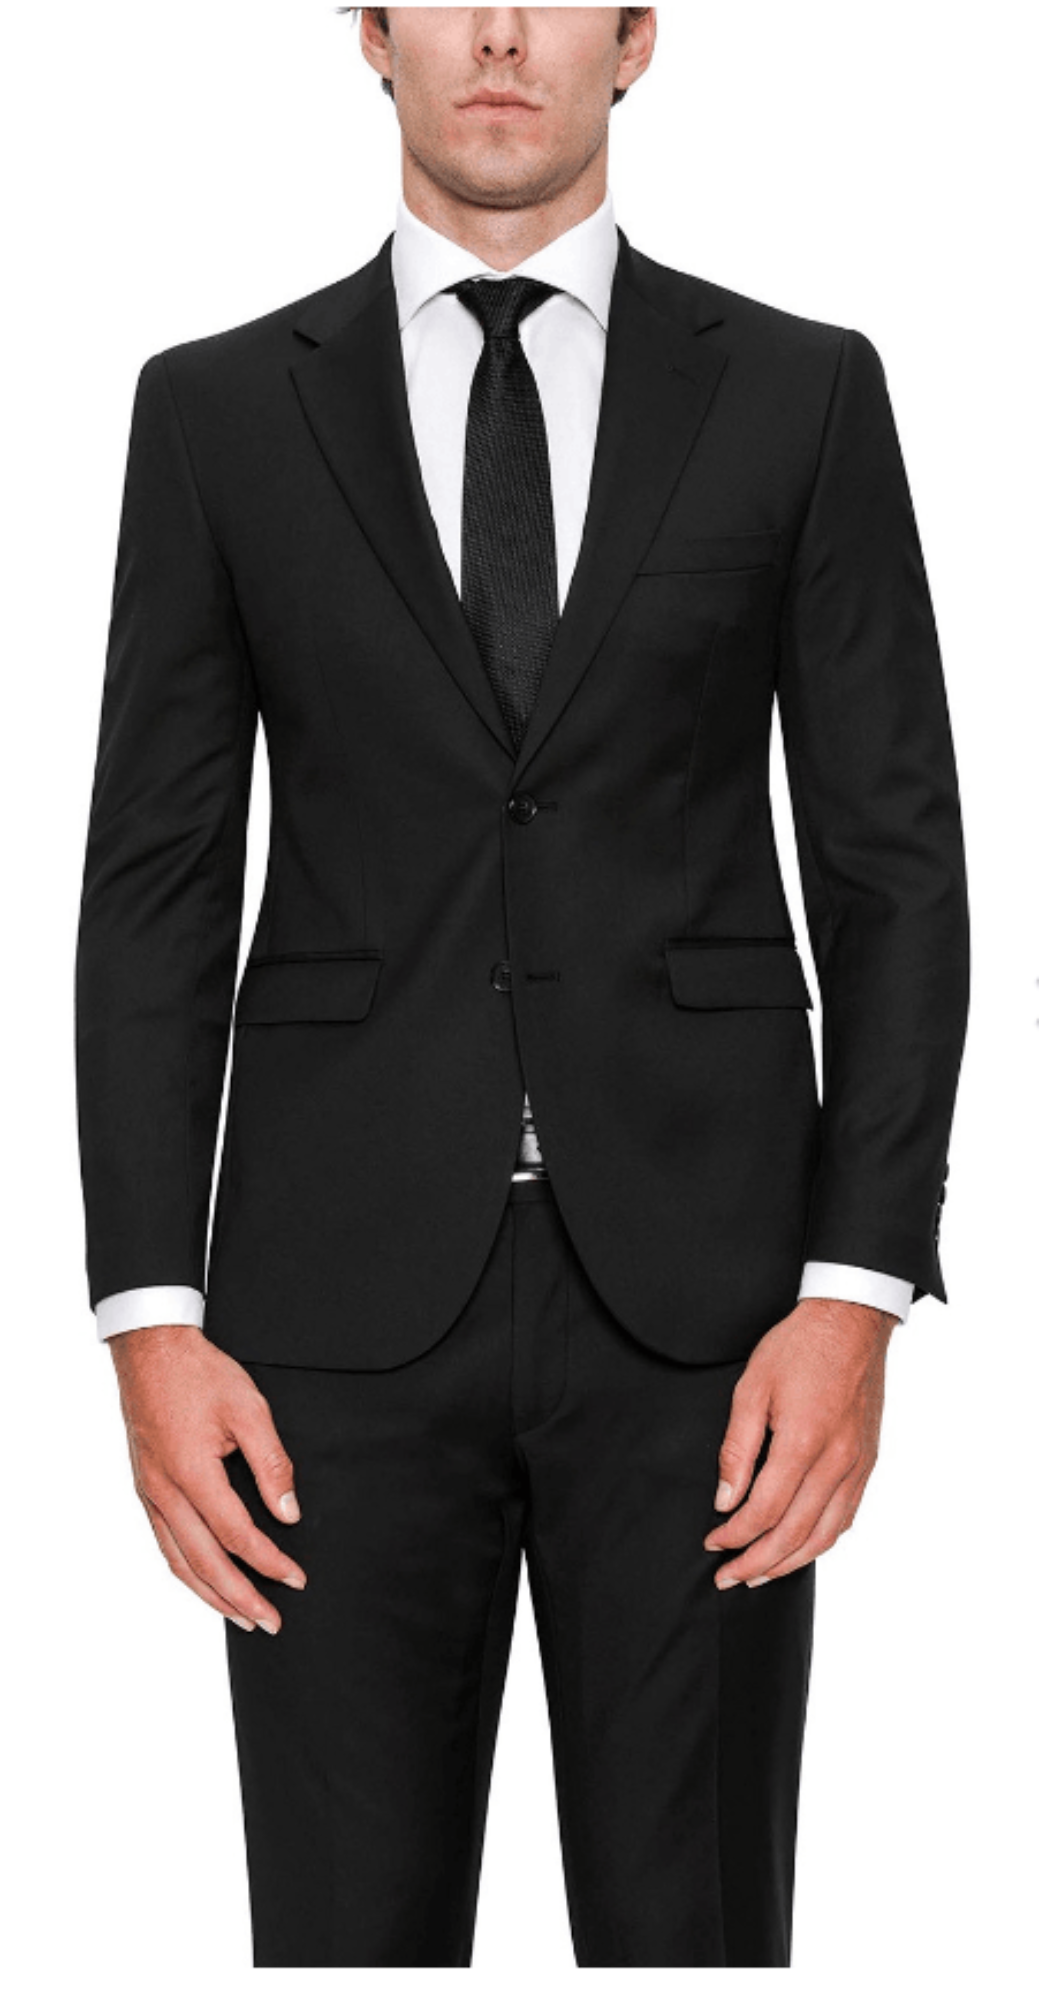 Serra Suit - Harrys for Menswear